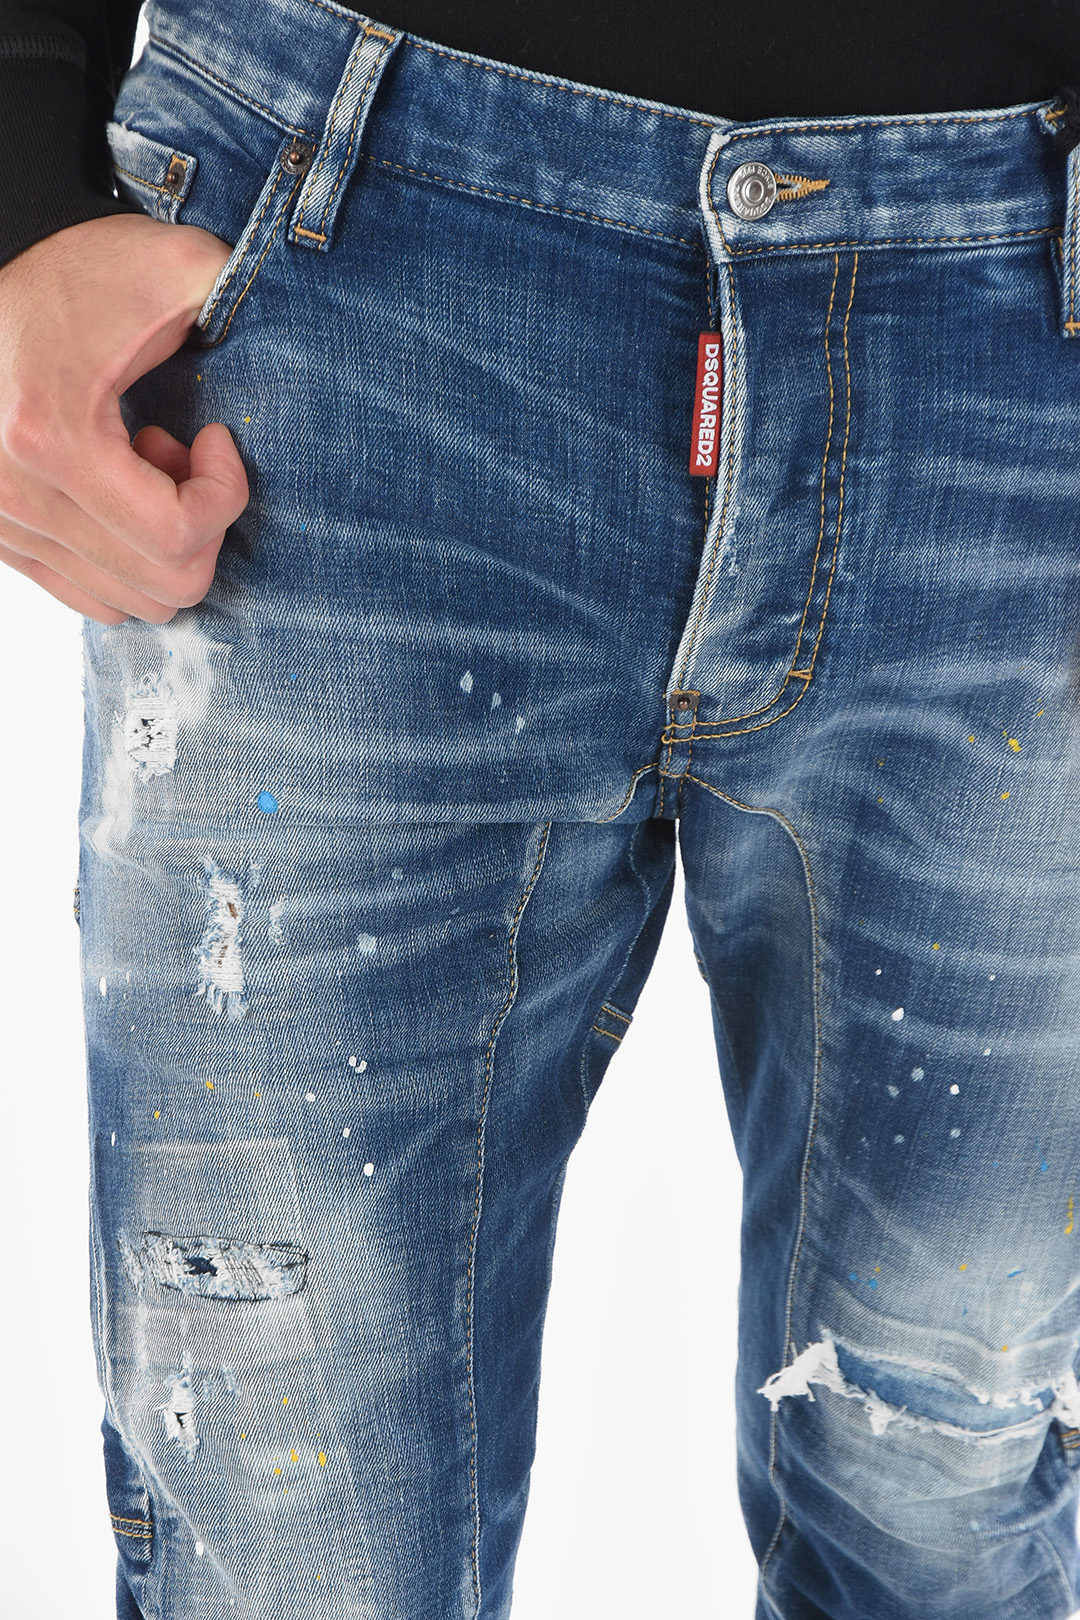 Distressed TIDY BIKER Jeans 17cm